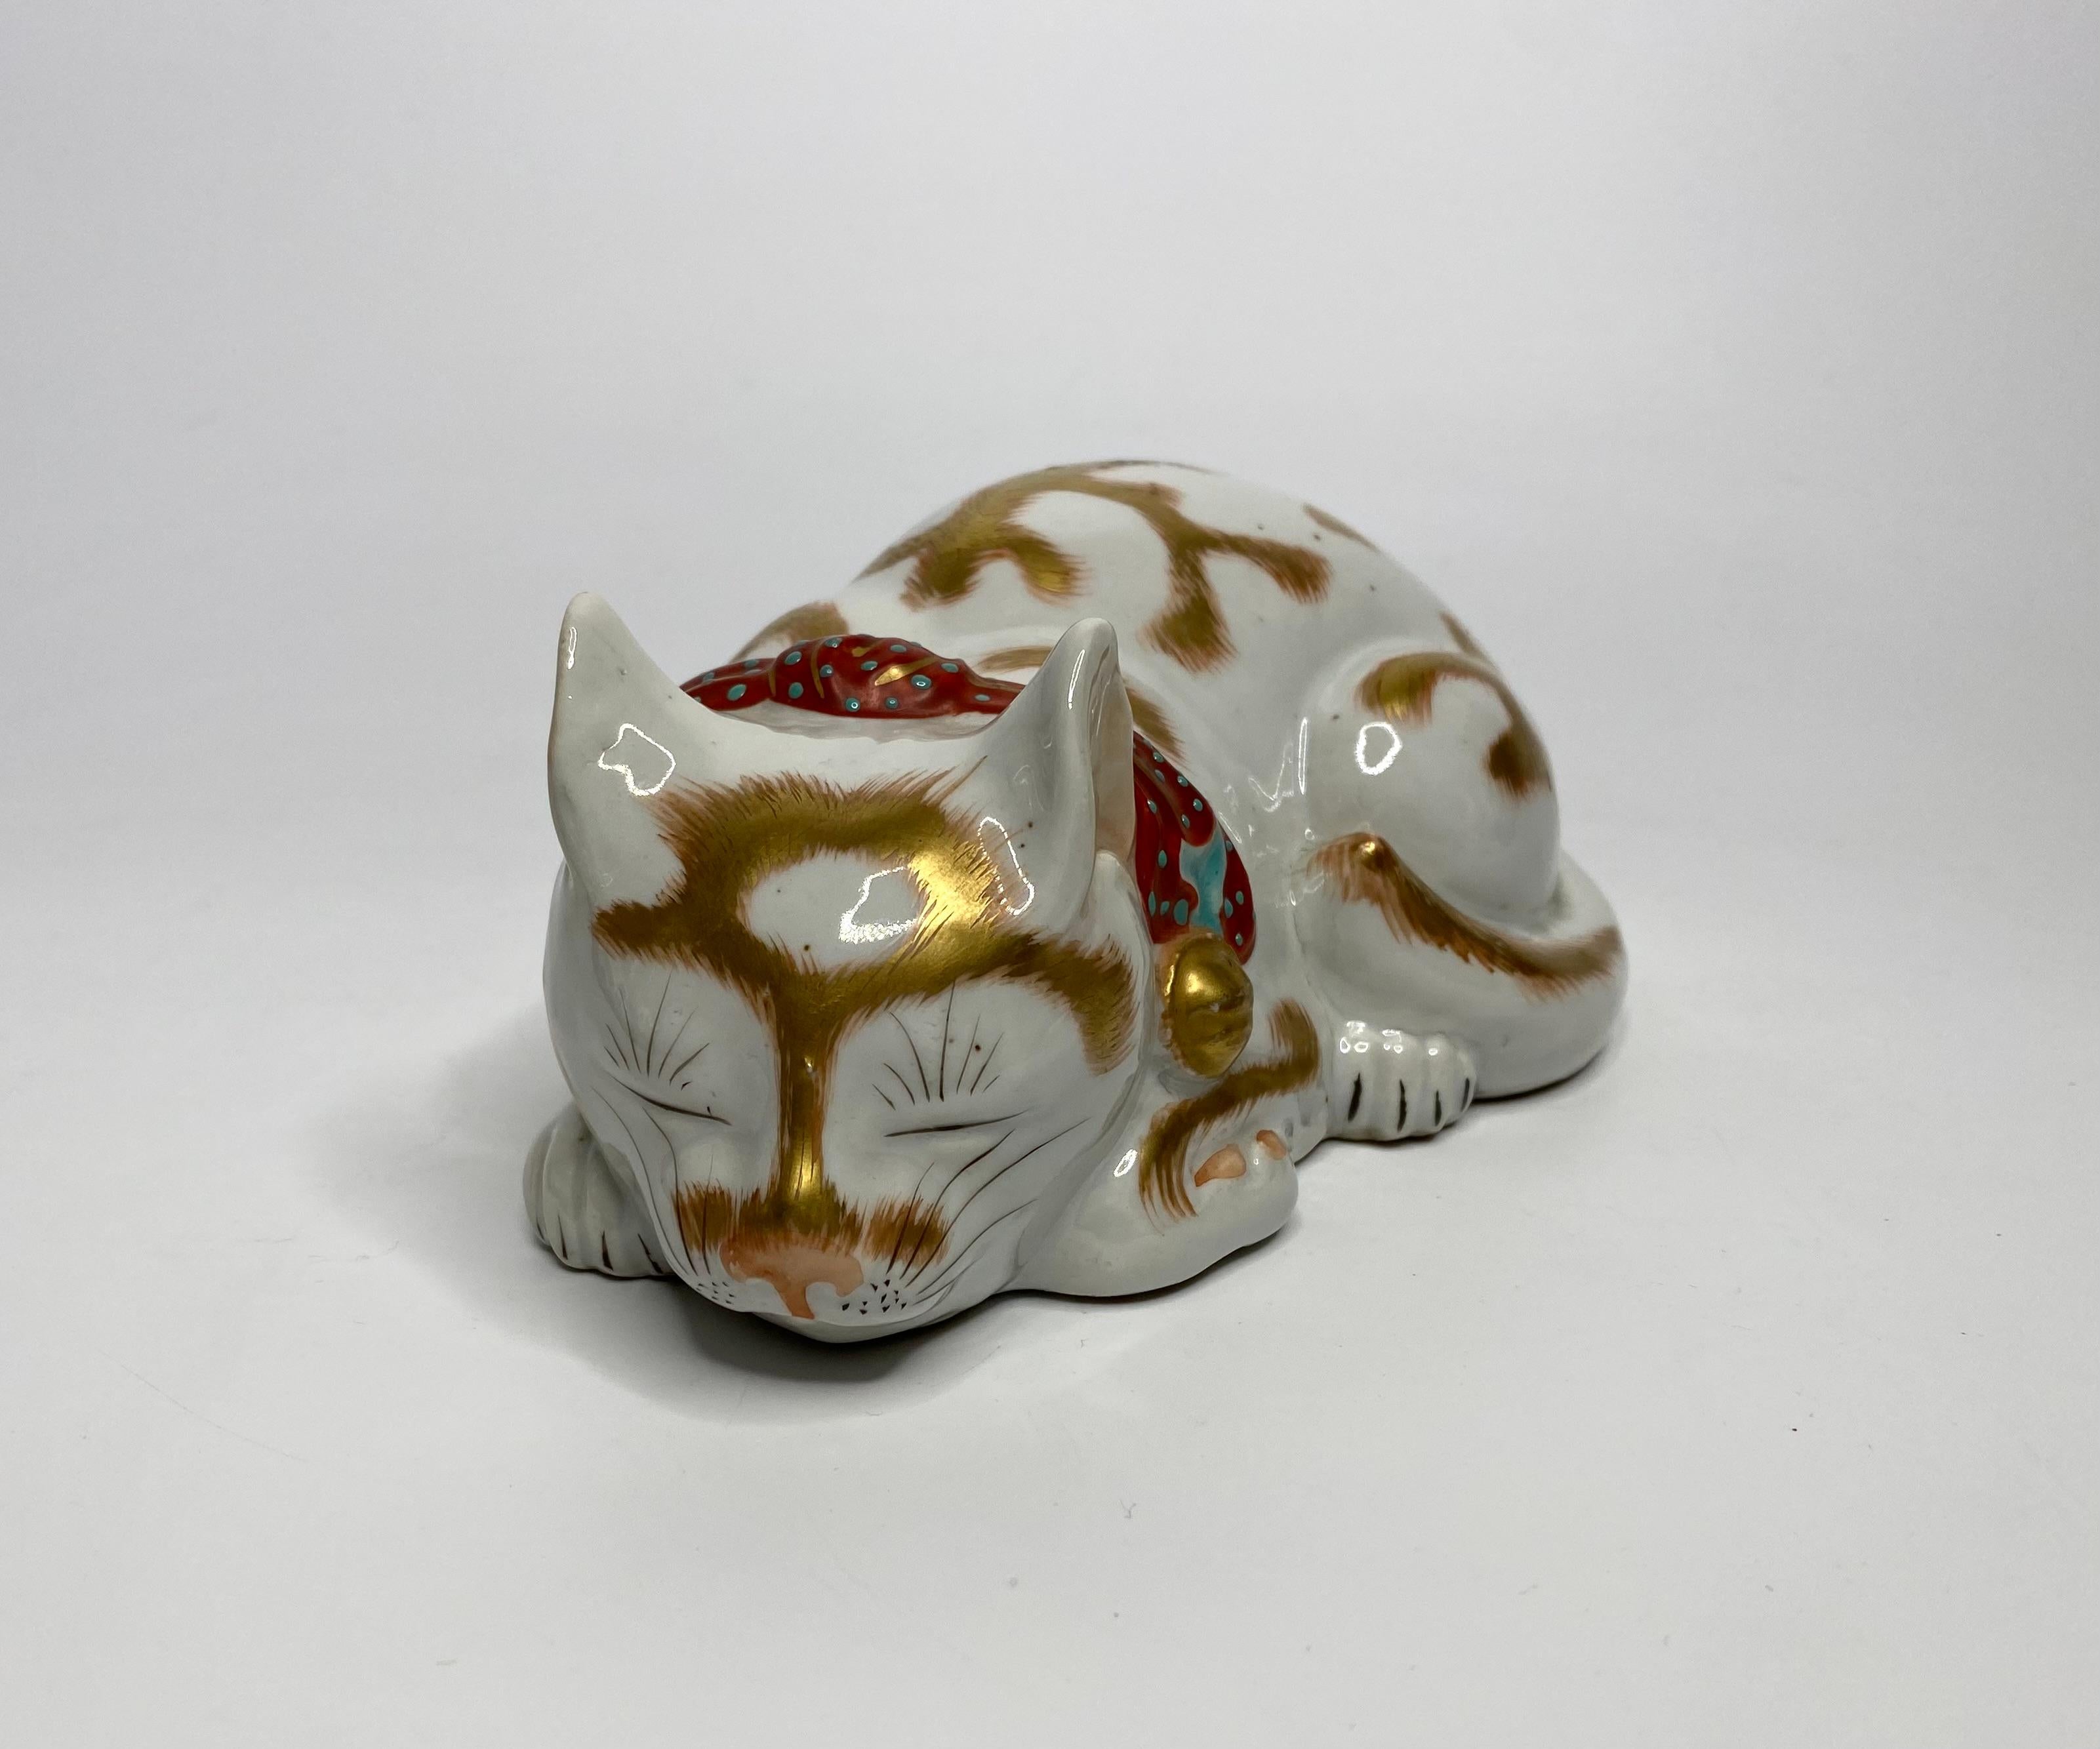 Kutani-Porzellan-Okimono mit einer Katze, um 1900. Meiji-Periode.

£490.00
Okimono aus Kutani-Porzellan, Japan, um 1900. Meiji-Periode. Fein modelliert als schlafende Katze, deren Haare mit Gold gezeichnet sind. Er trägt einen eisenrot emaillierten